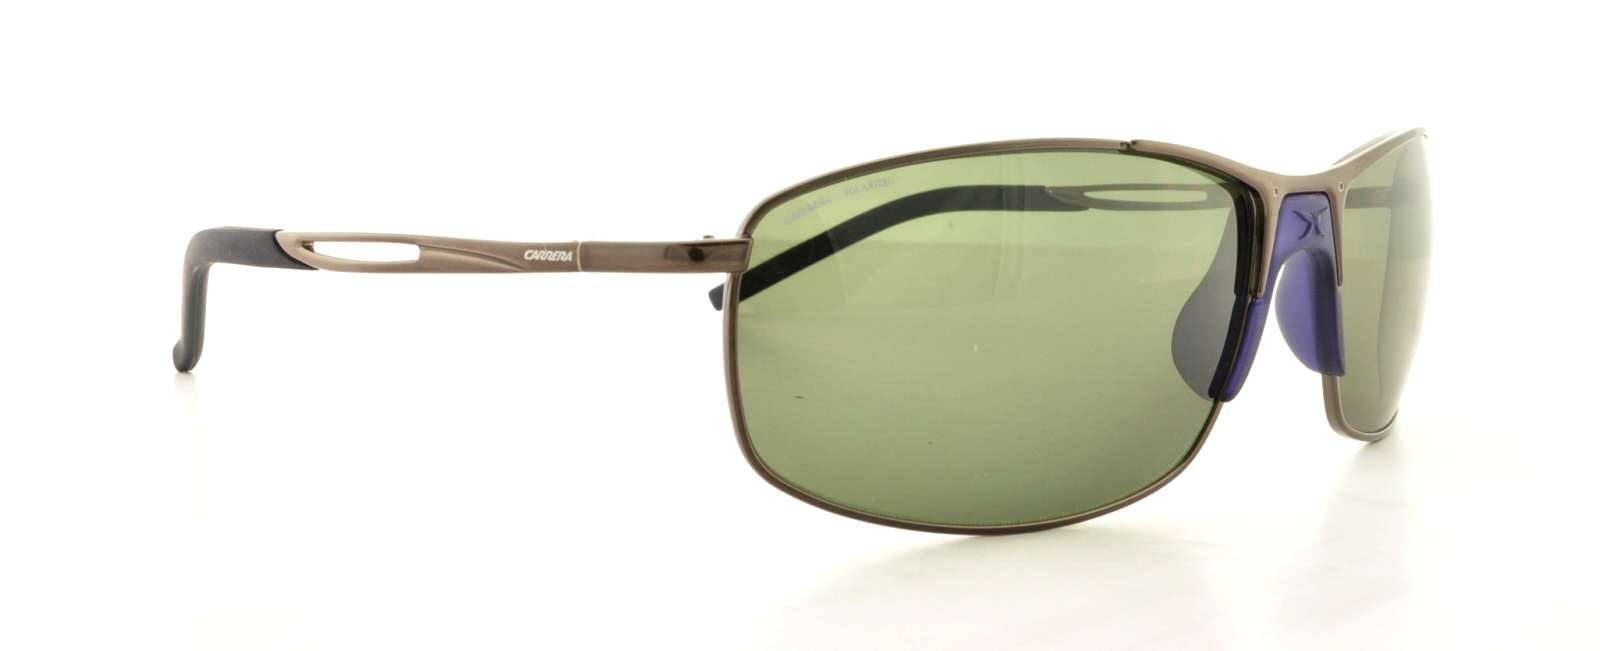 Designer Frames Outlet. Carrera Sunglasses HURON/S